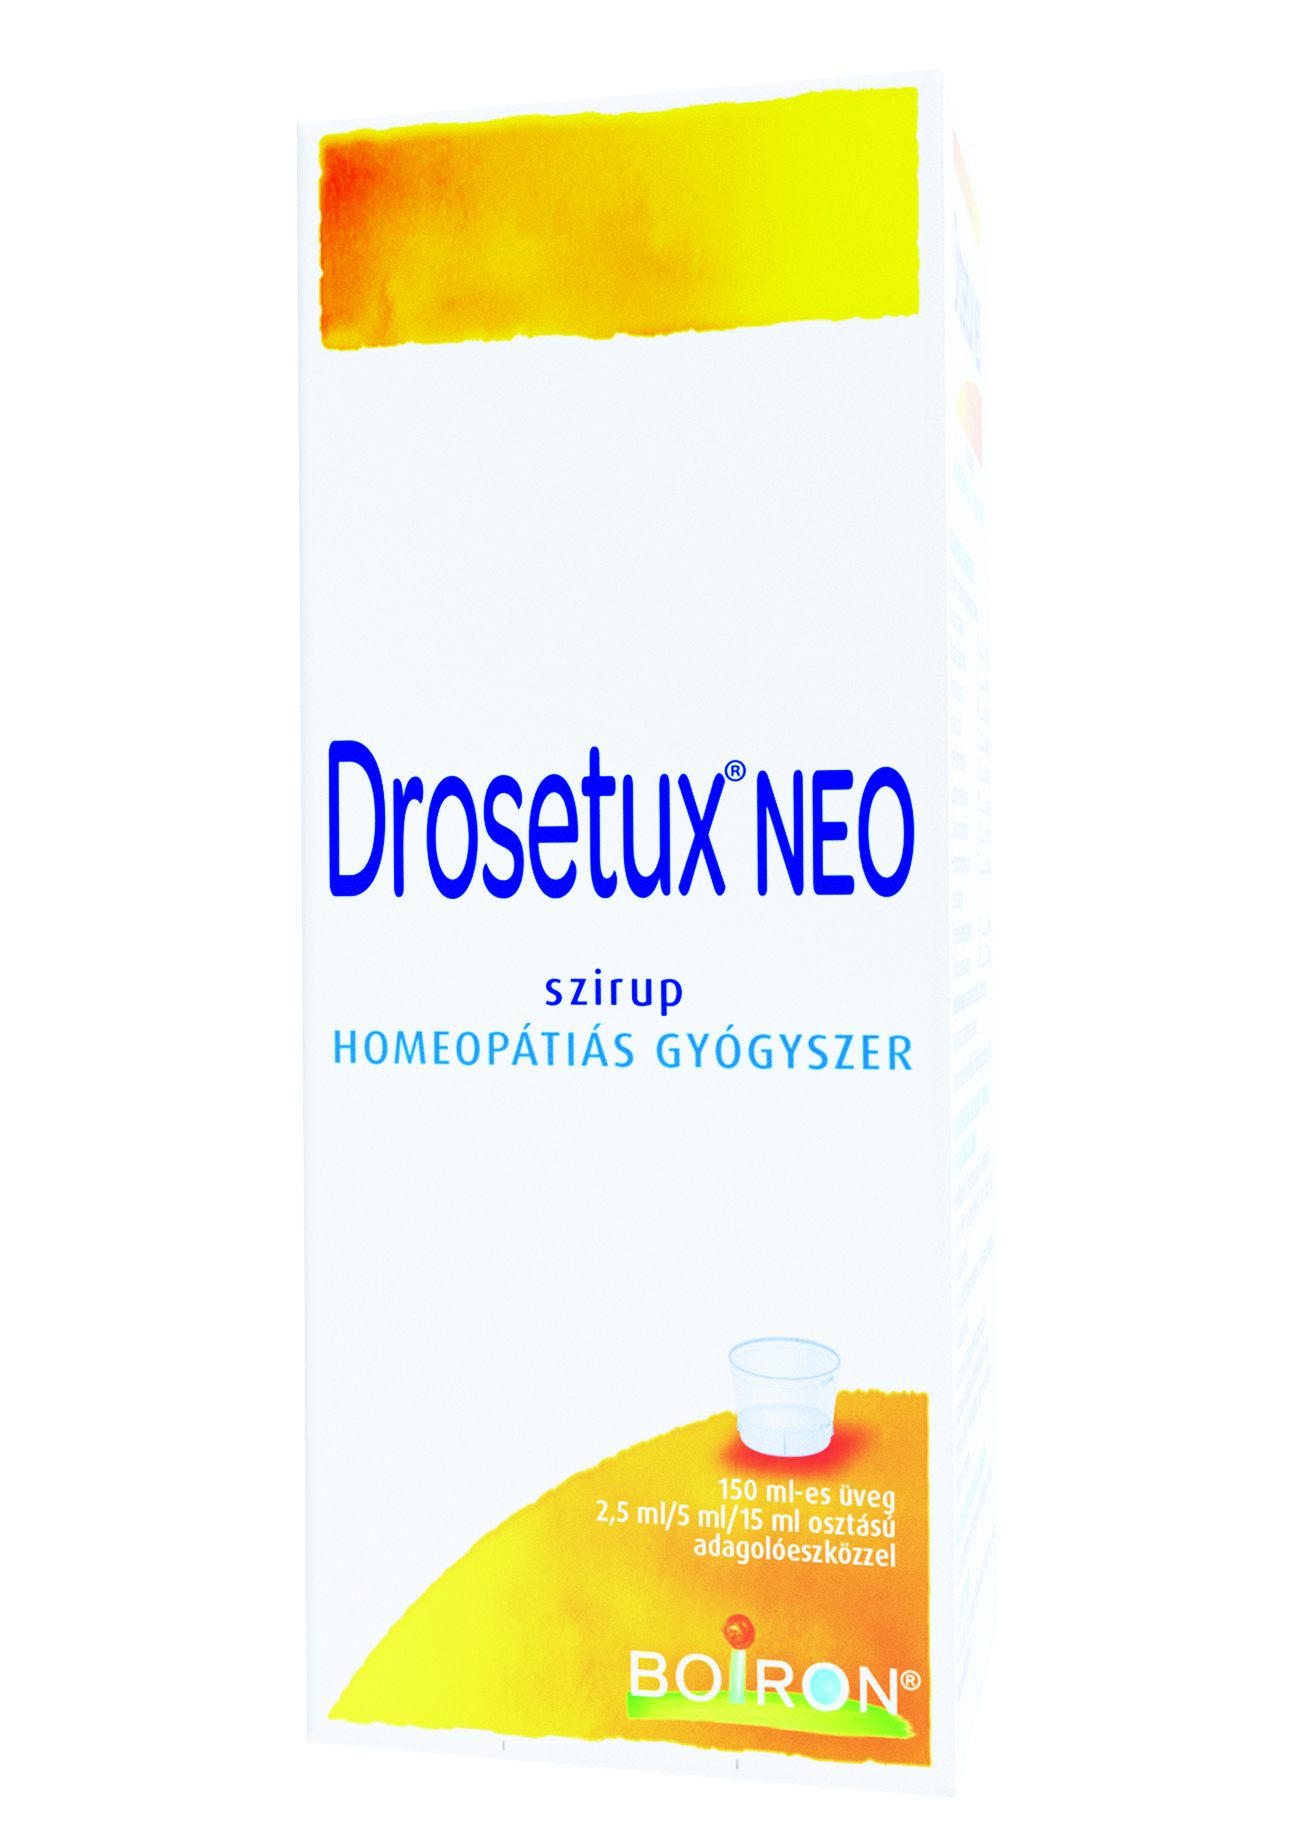 Drosetux NEO szirup 150 ml